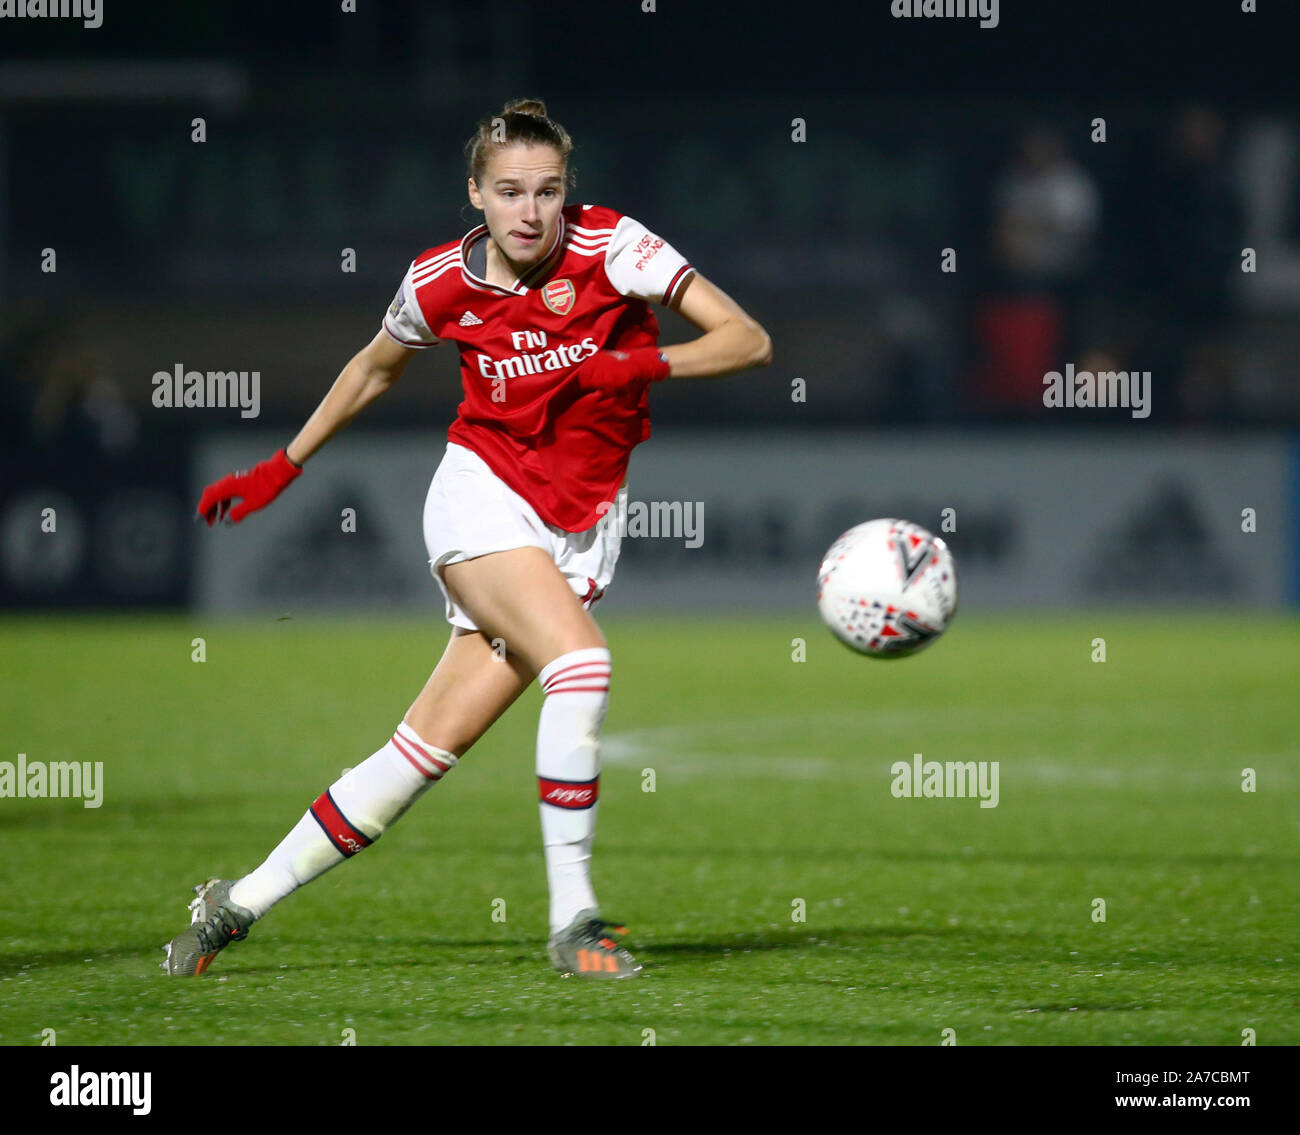 Manchester, Angleterre - 31 OCTOBRE : Vivianne Miedema d'Arsenal pendant l'Uefa Women's Champions League Tour de jambe 16 2 match entre Arsenal et les femmes Banque D'Images